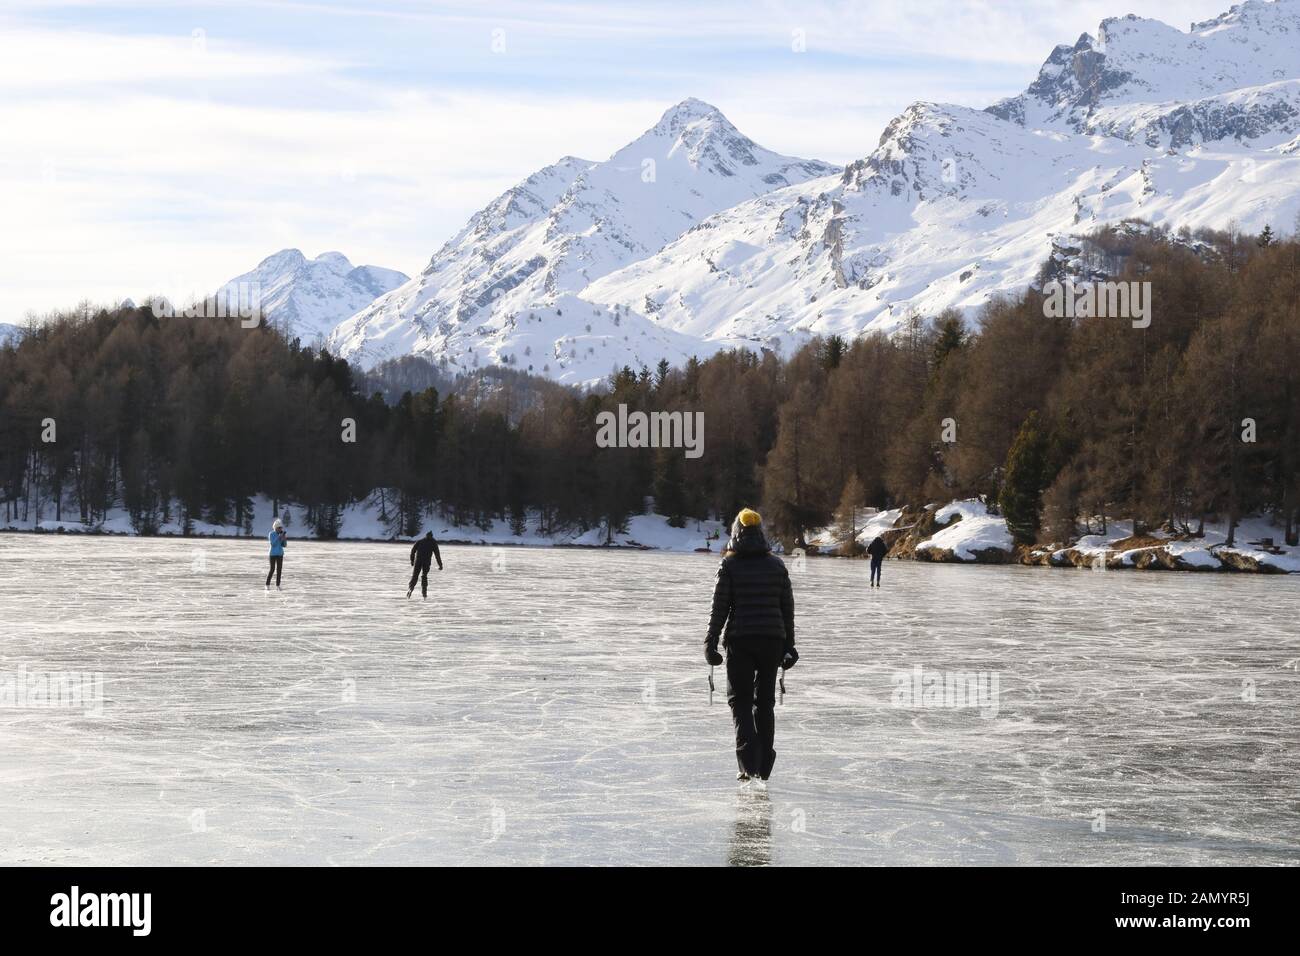 Eislaufvergnügen Silsersees auf dem Schwarzeis des. Banque D'Images